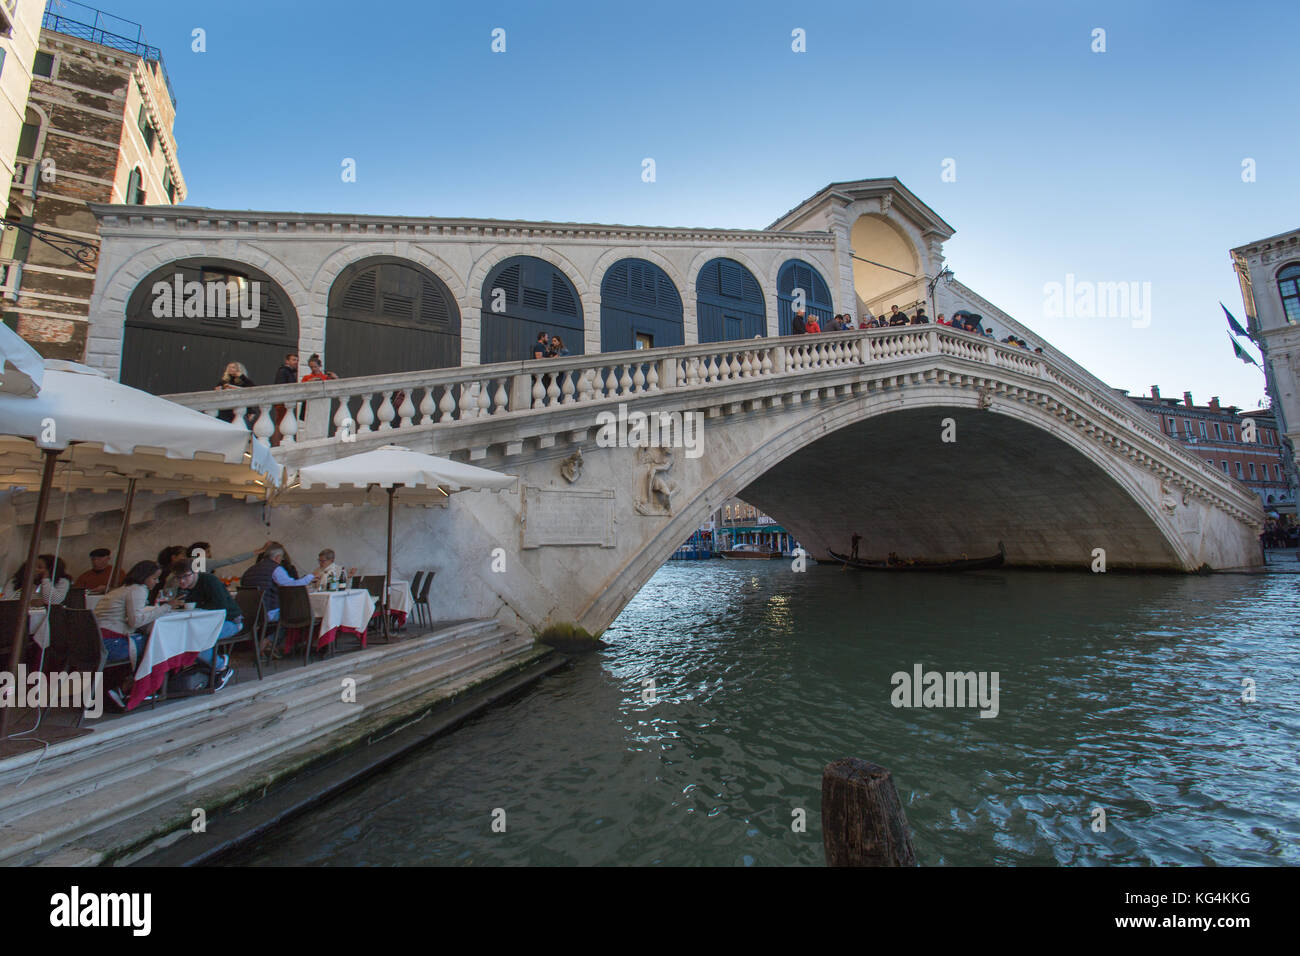 Ciudad de Venecia, Italia. La pintoresca anochecer vista de la fachada norte del puente de Rialto sobre el gran canal. Foto de stock